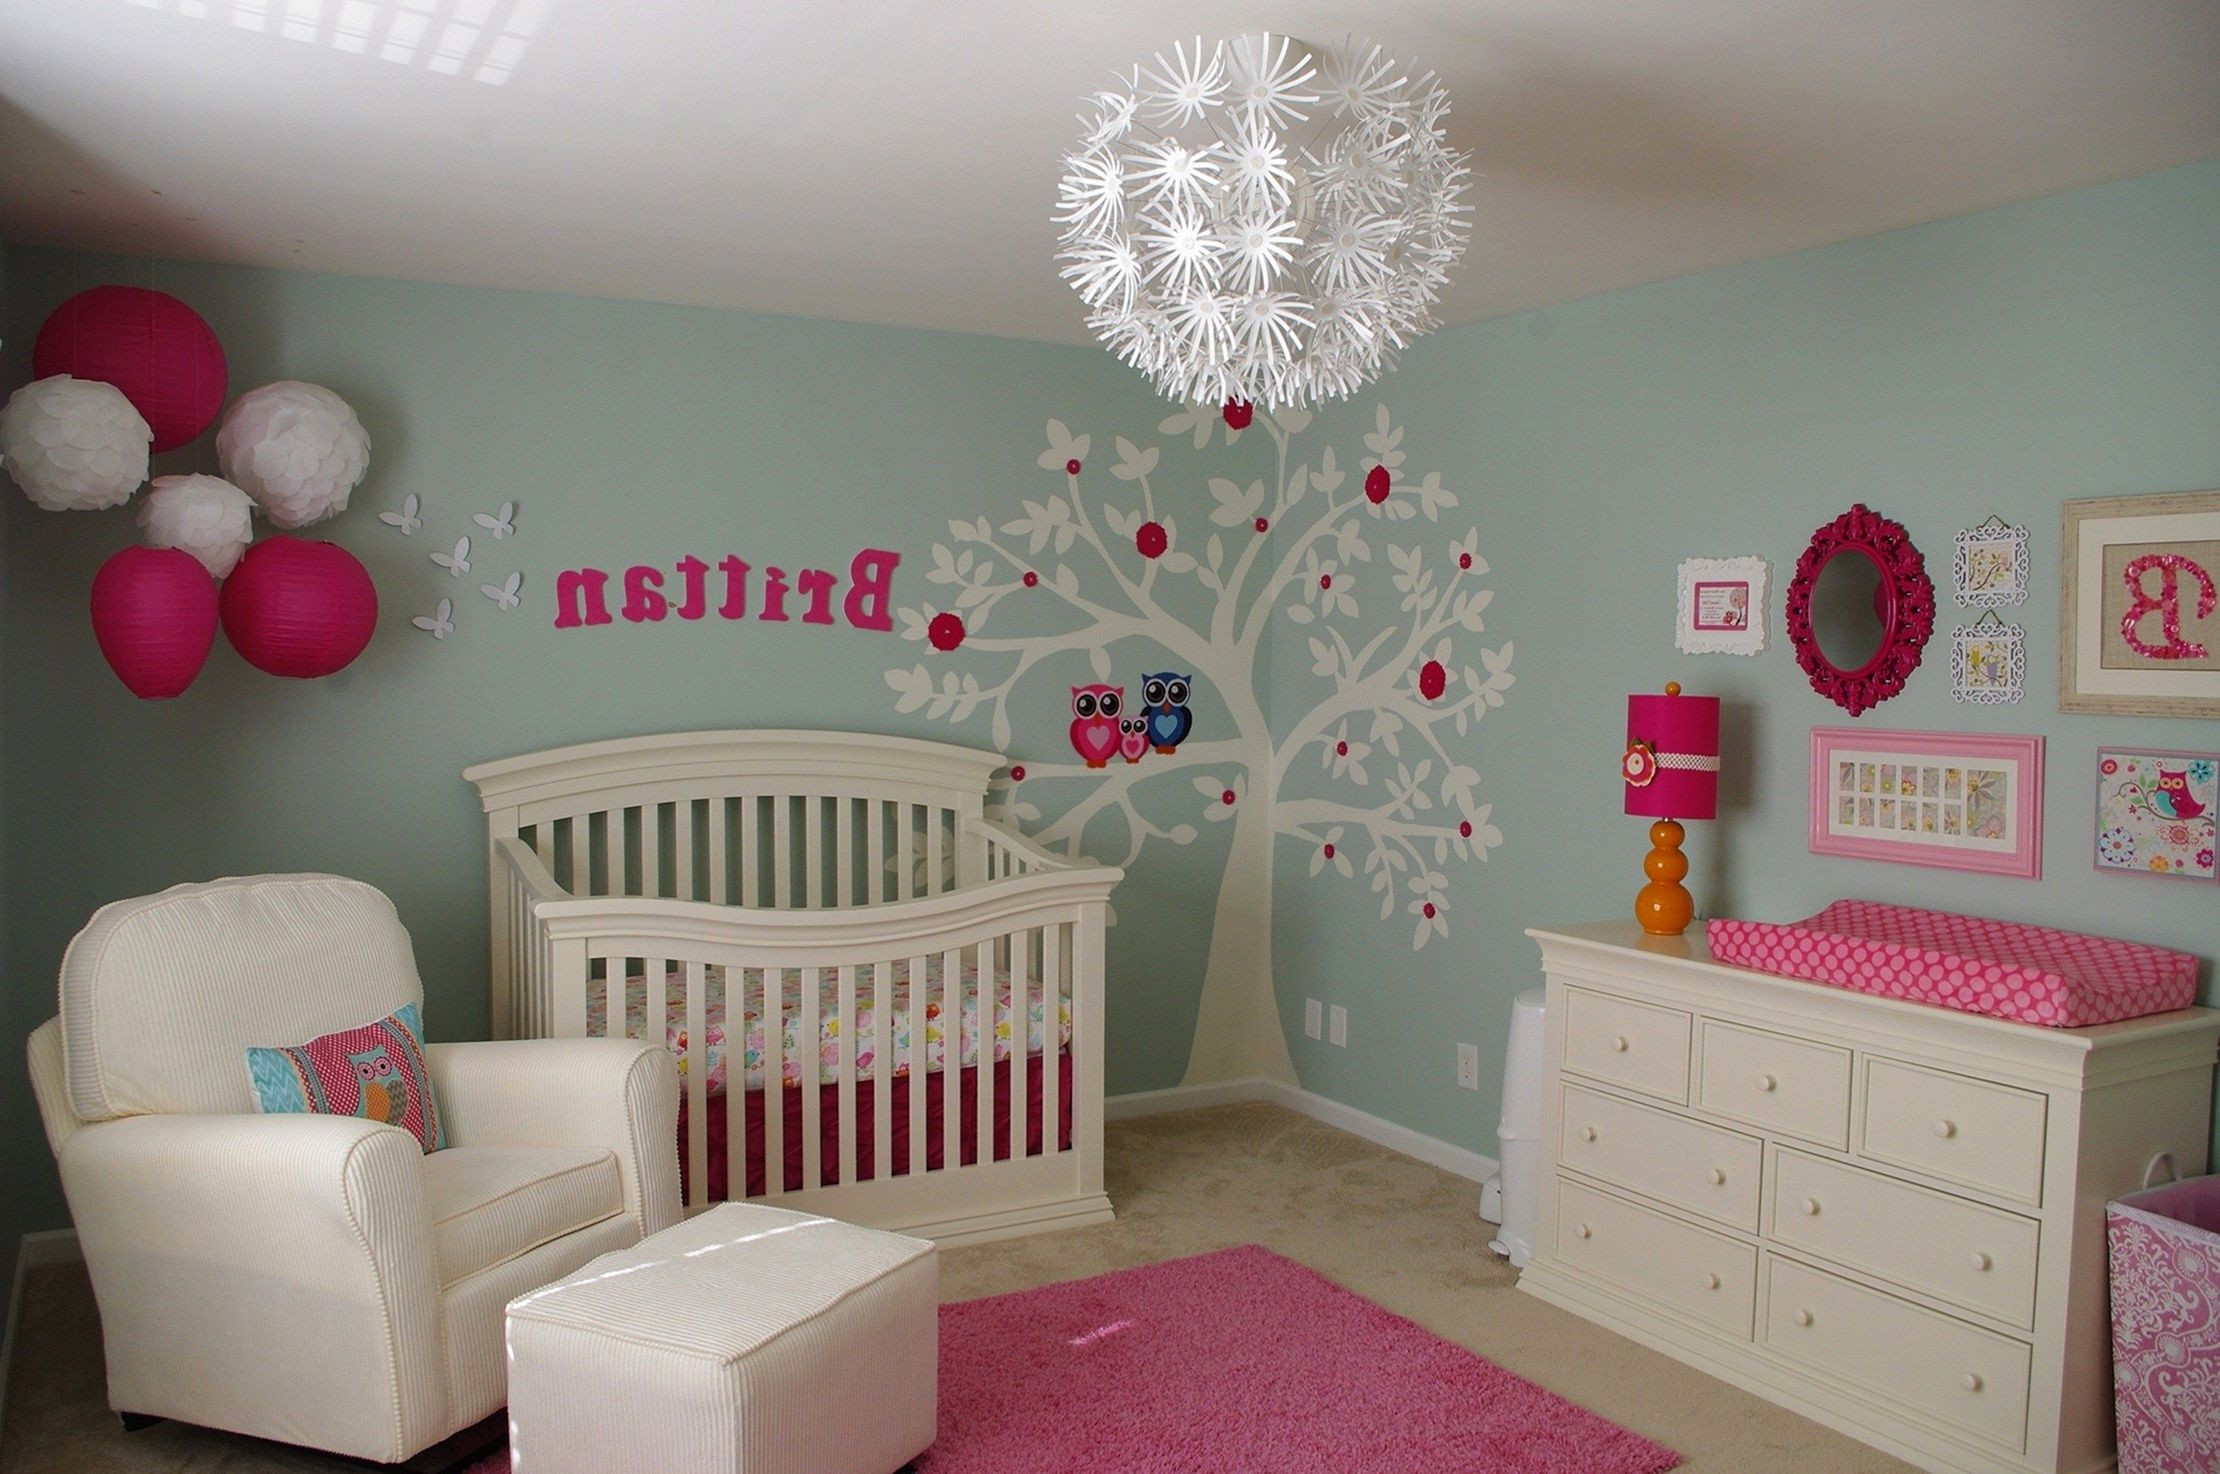 DIY Baby Girl Room Decorations
 DIY Baby Room Decor Ideas For Girls DIY Baby Room Decor